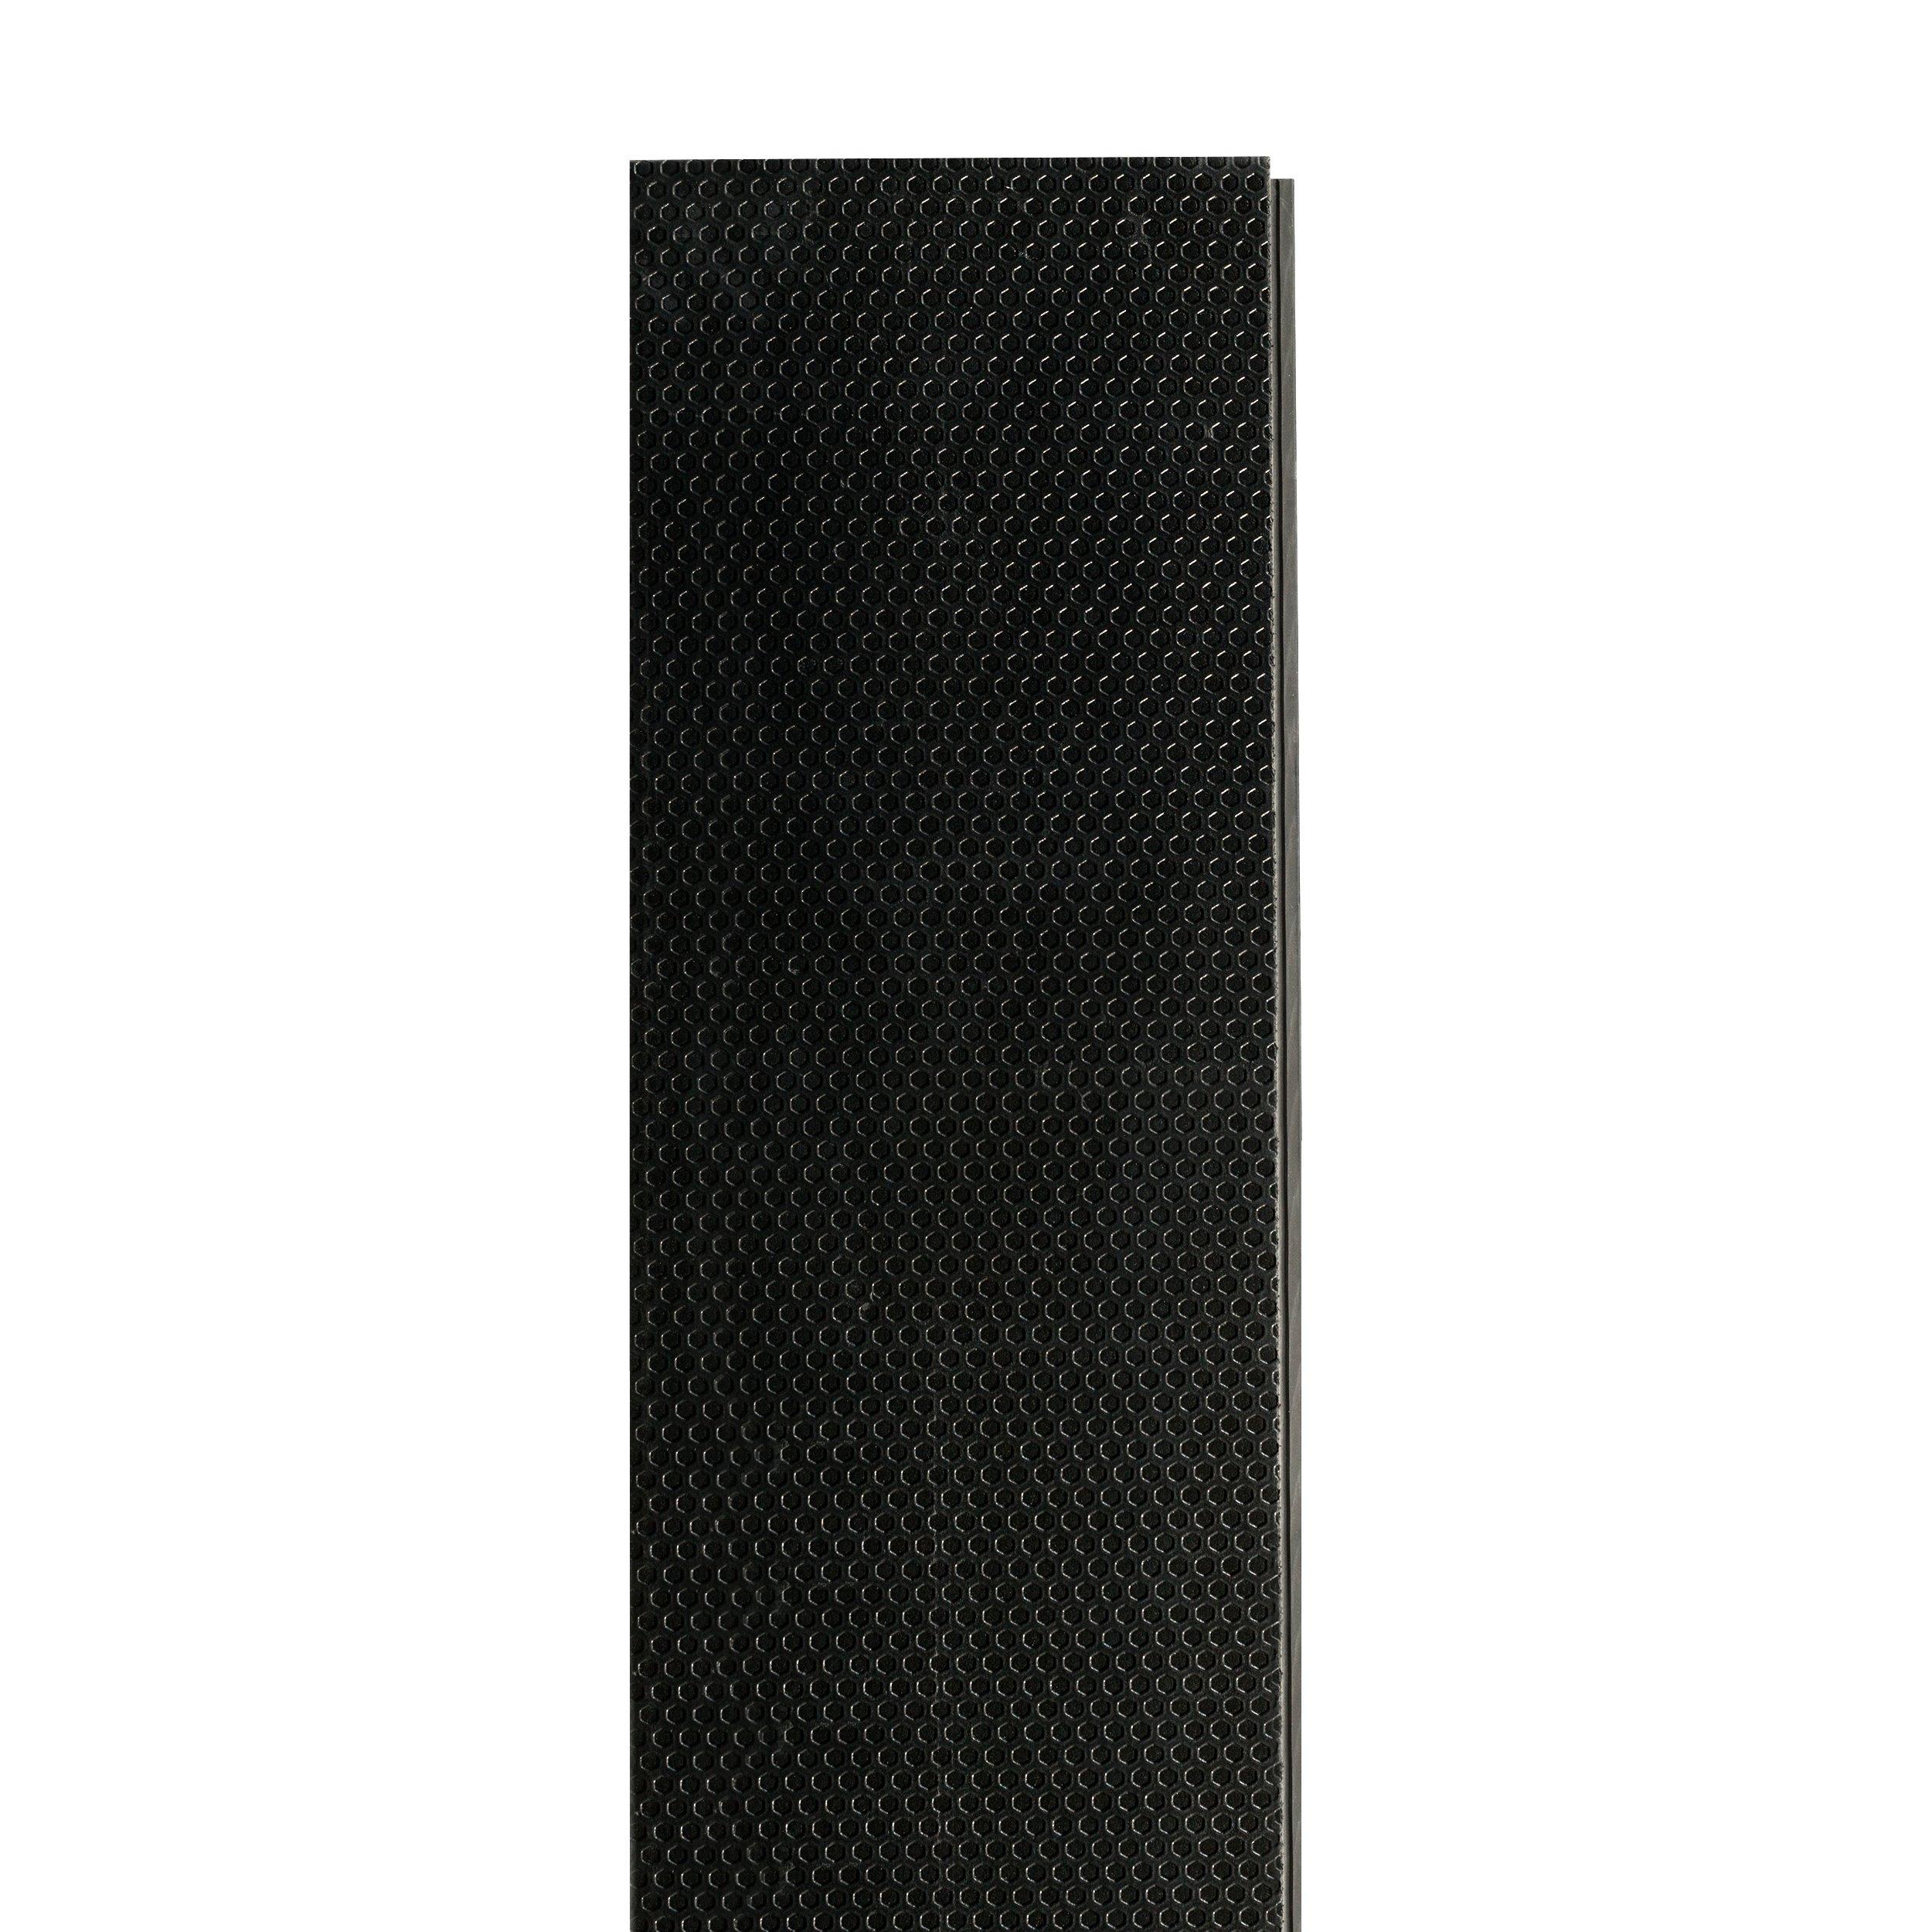 High Sierra Rigid Core Luxury Vinyl Plank - Foam Back